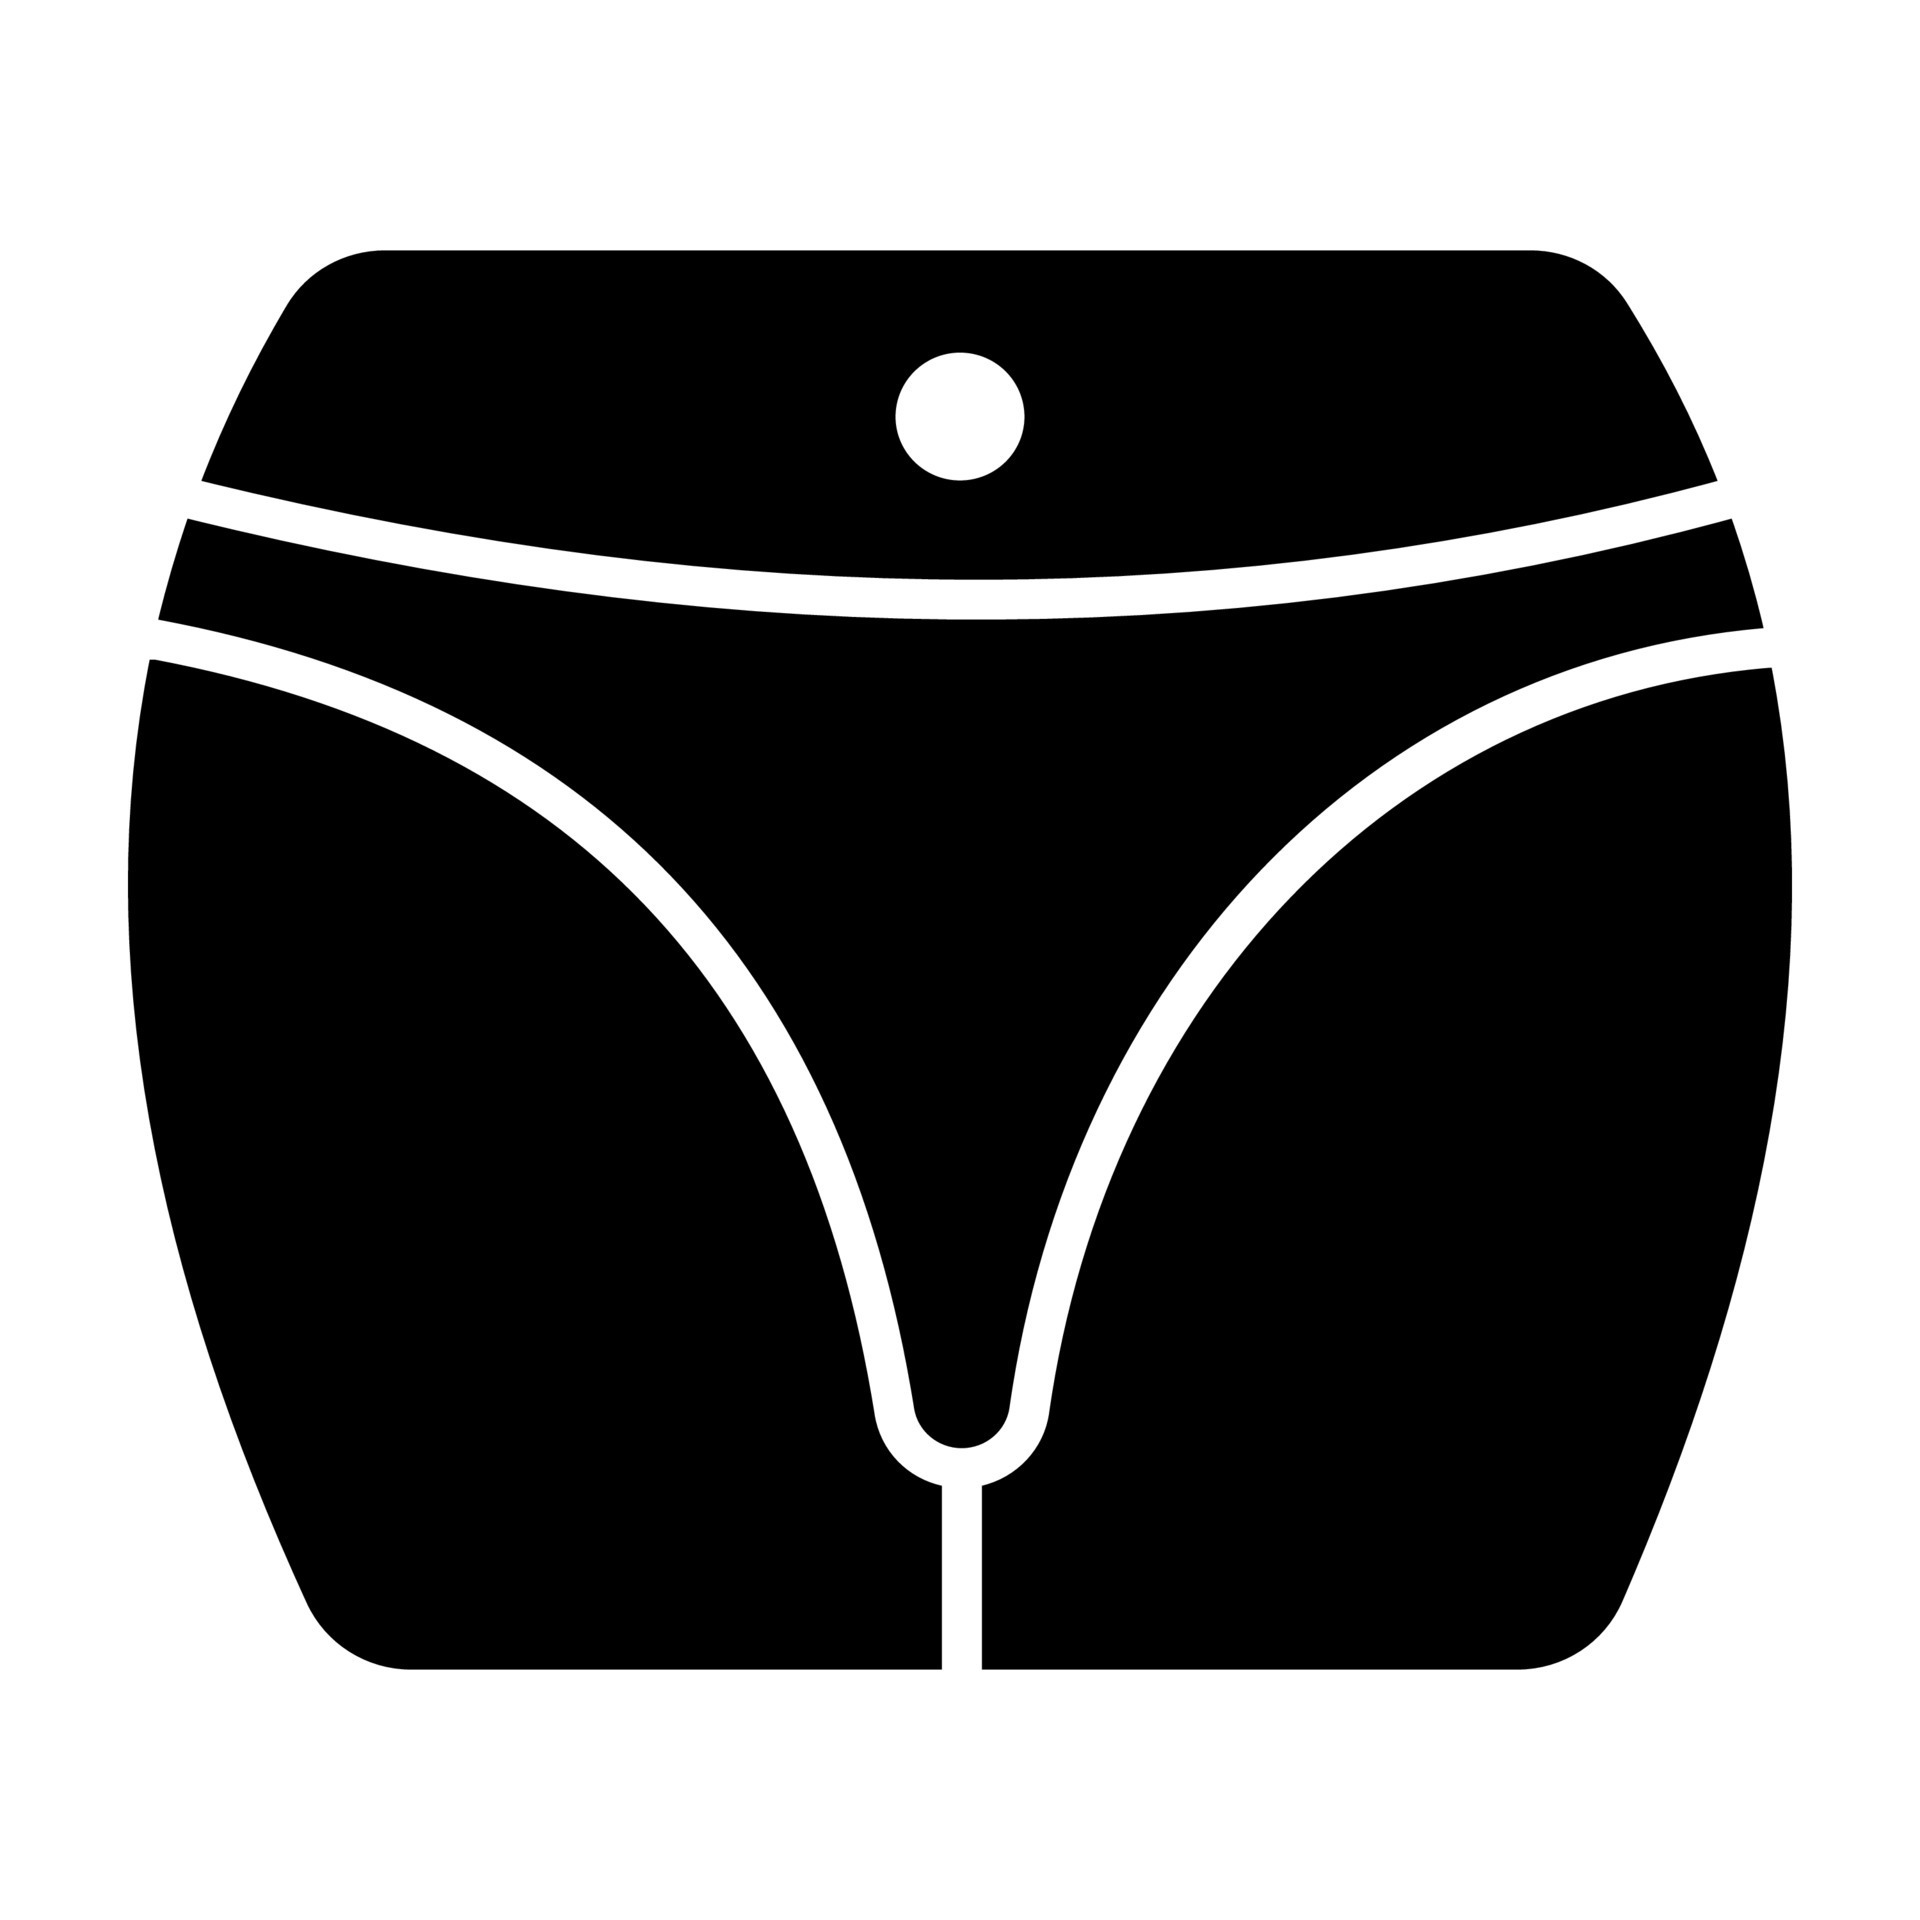 Women thigh vector design, underwear icon 17316716 Vector Art at